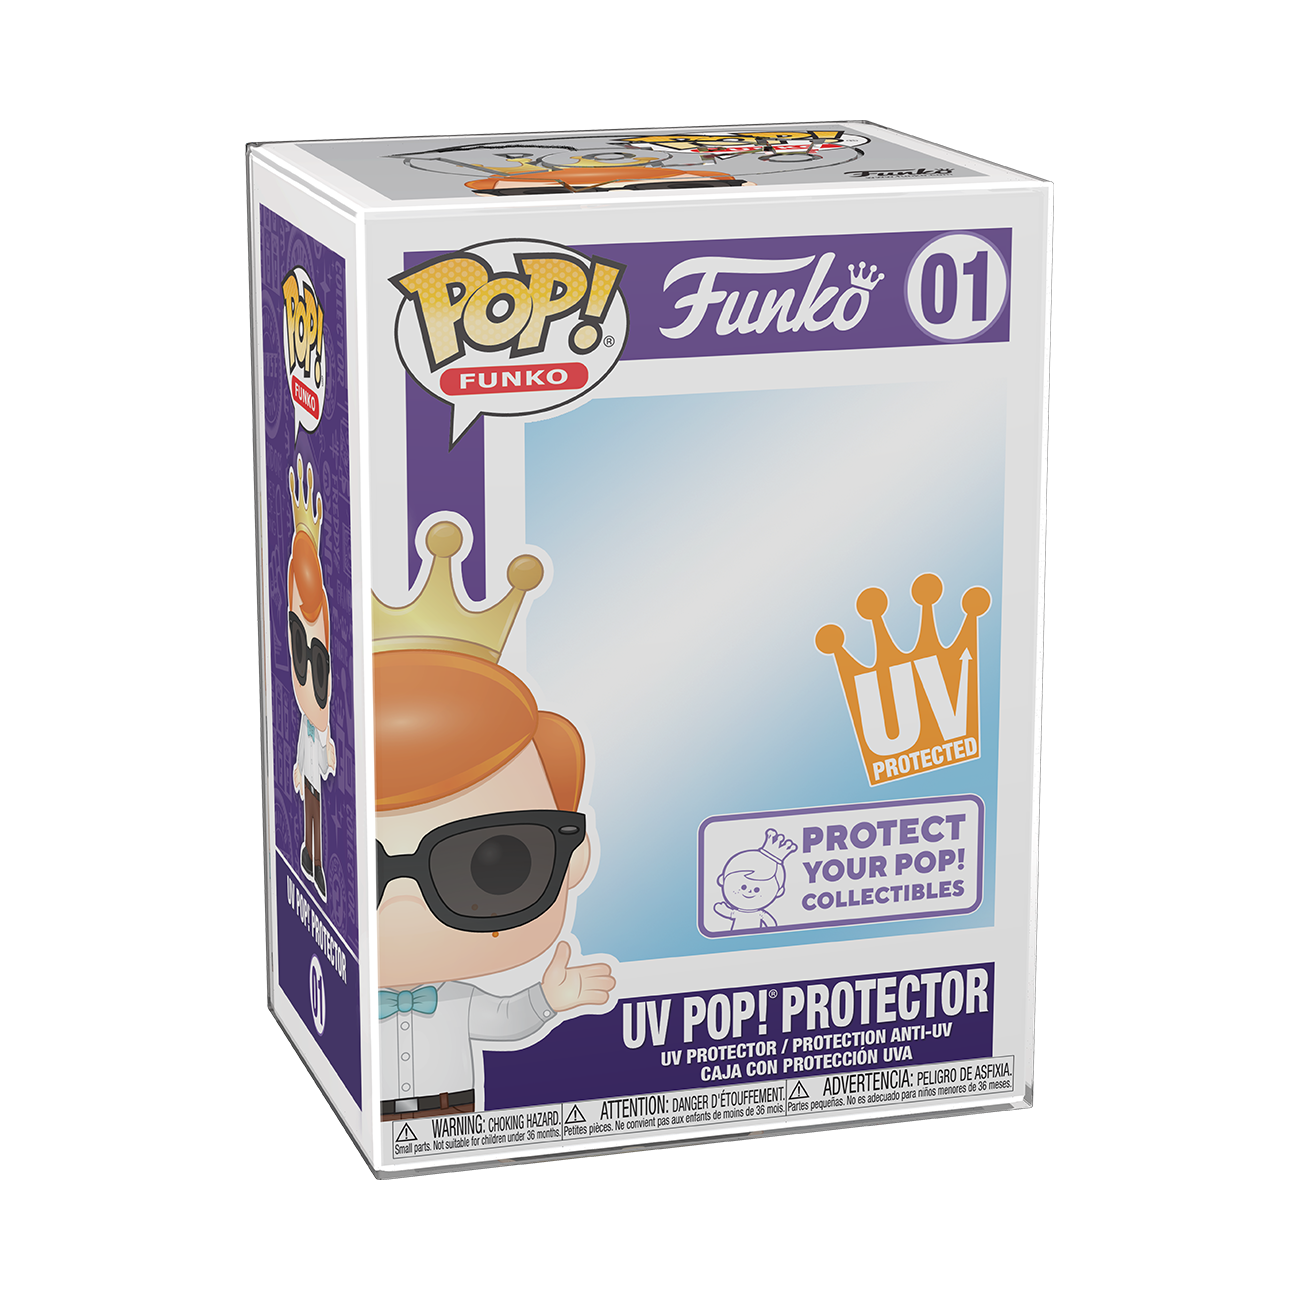 Funko Pop! Protectors